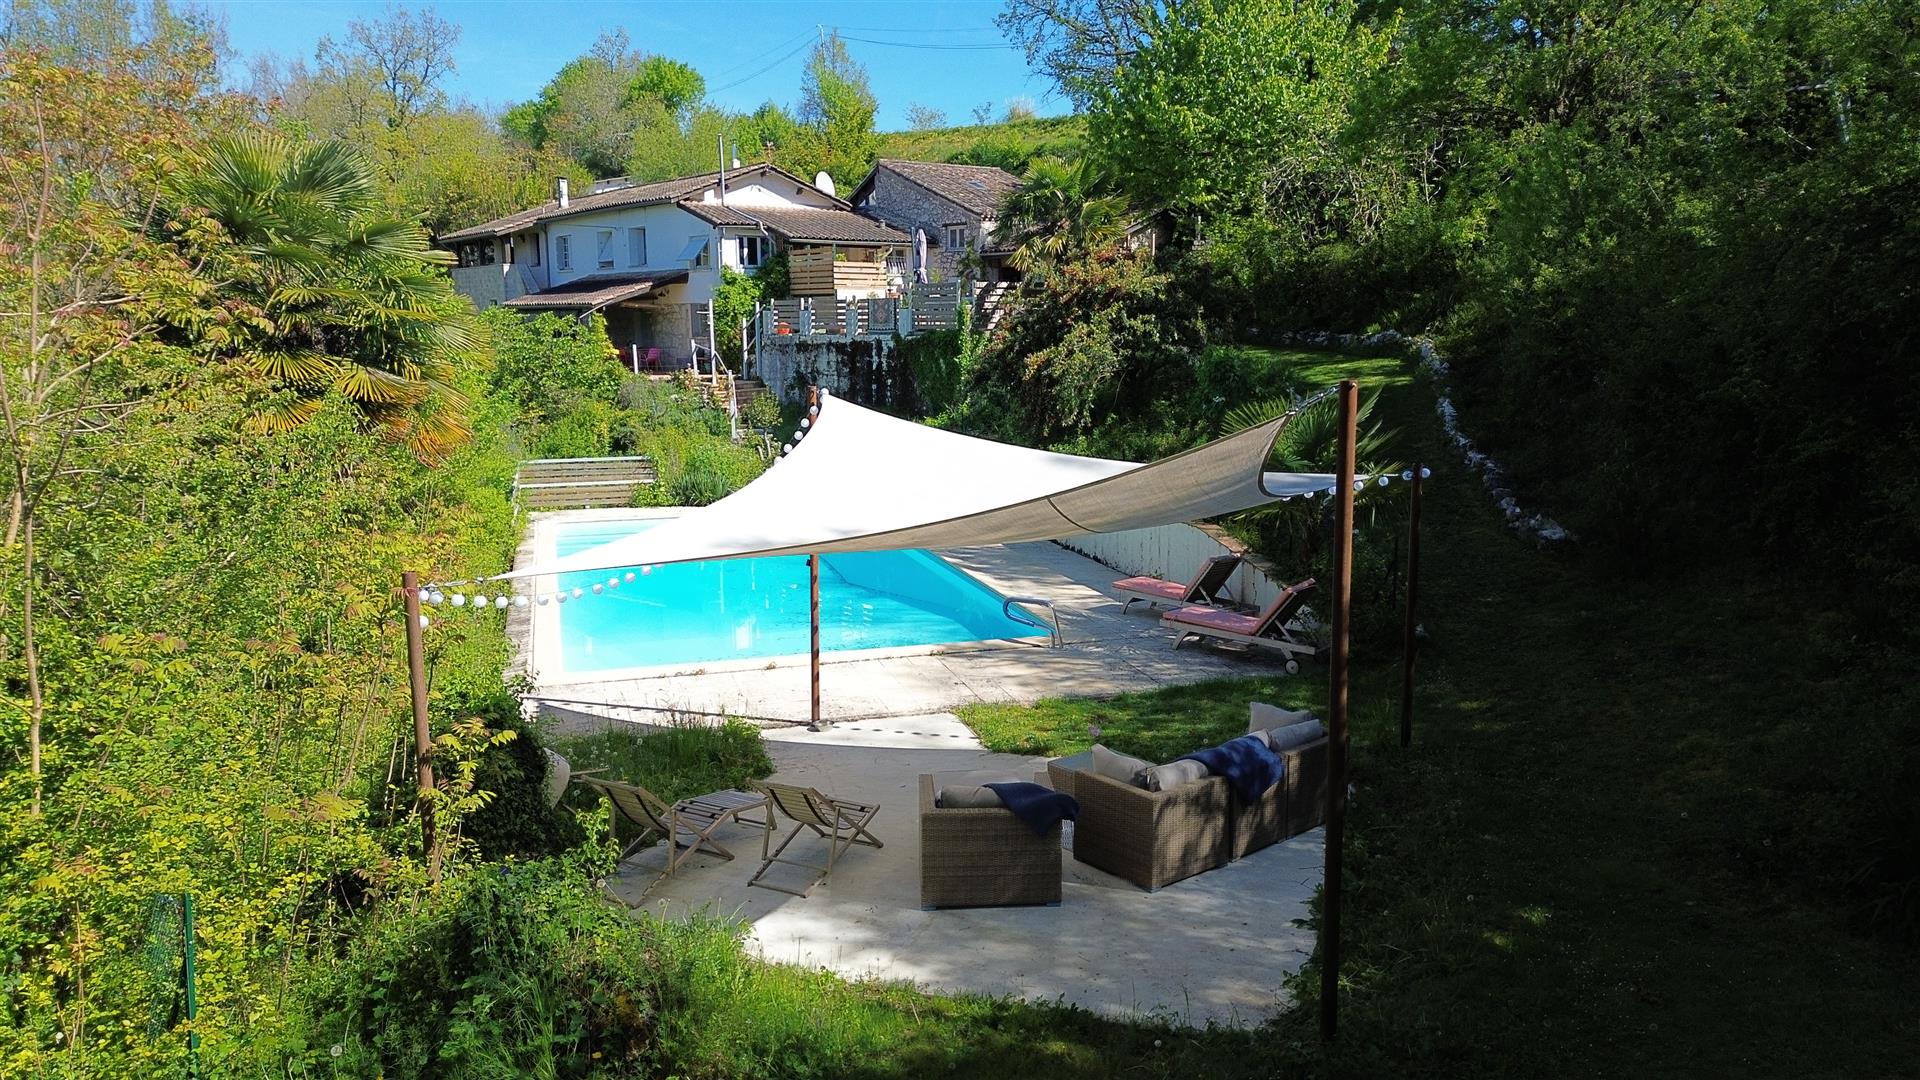  Tarn Et Garonne 3-Bett-Haus mit Pool, 2+Hektar unglaubliche Aussicht